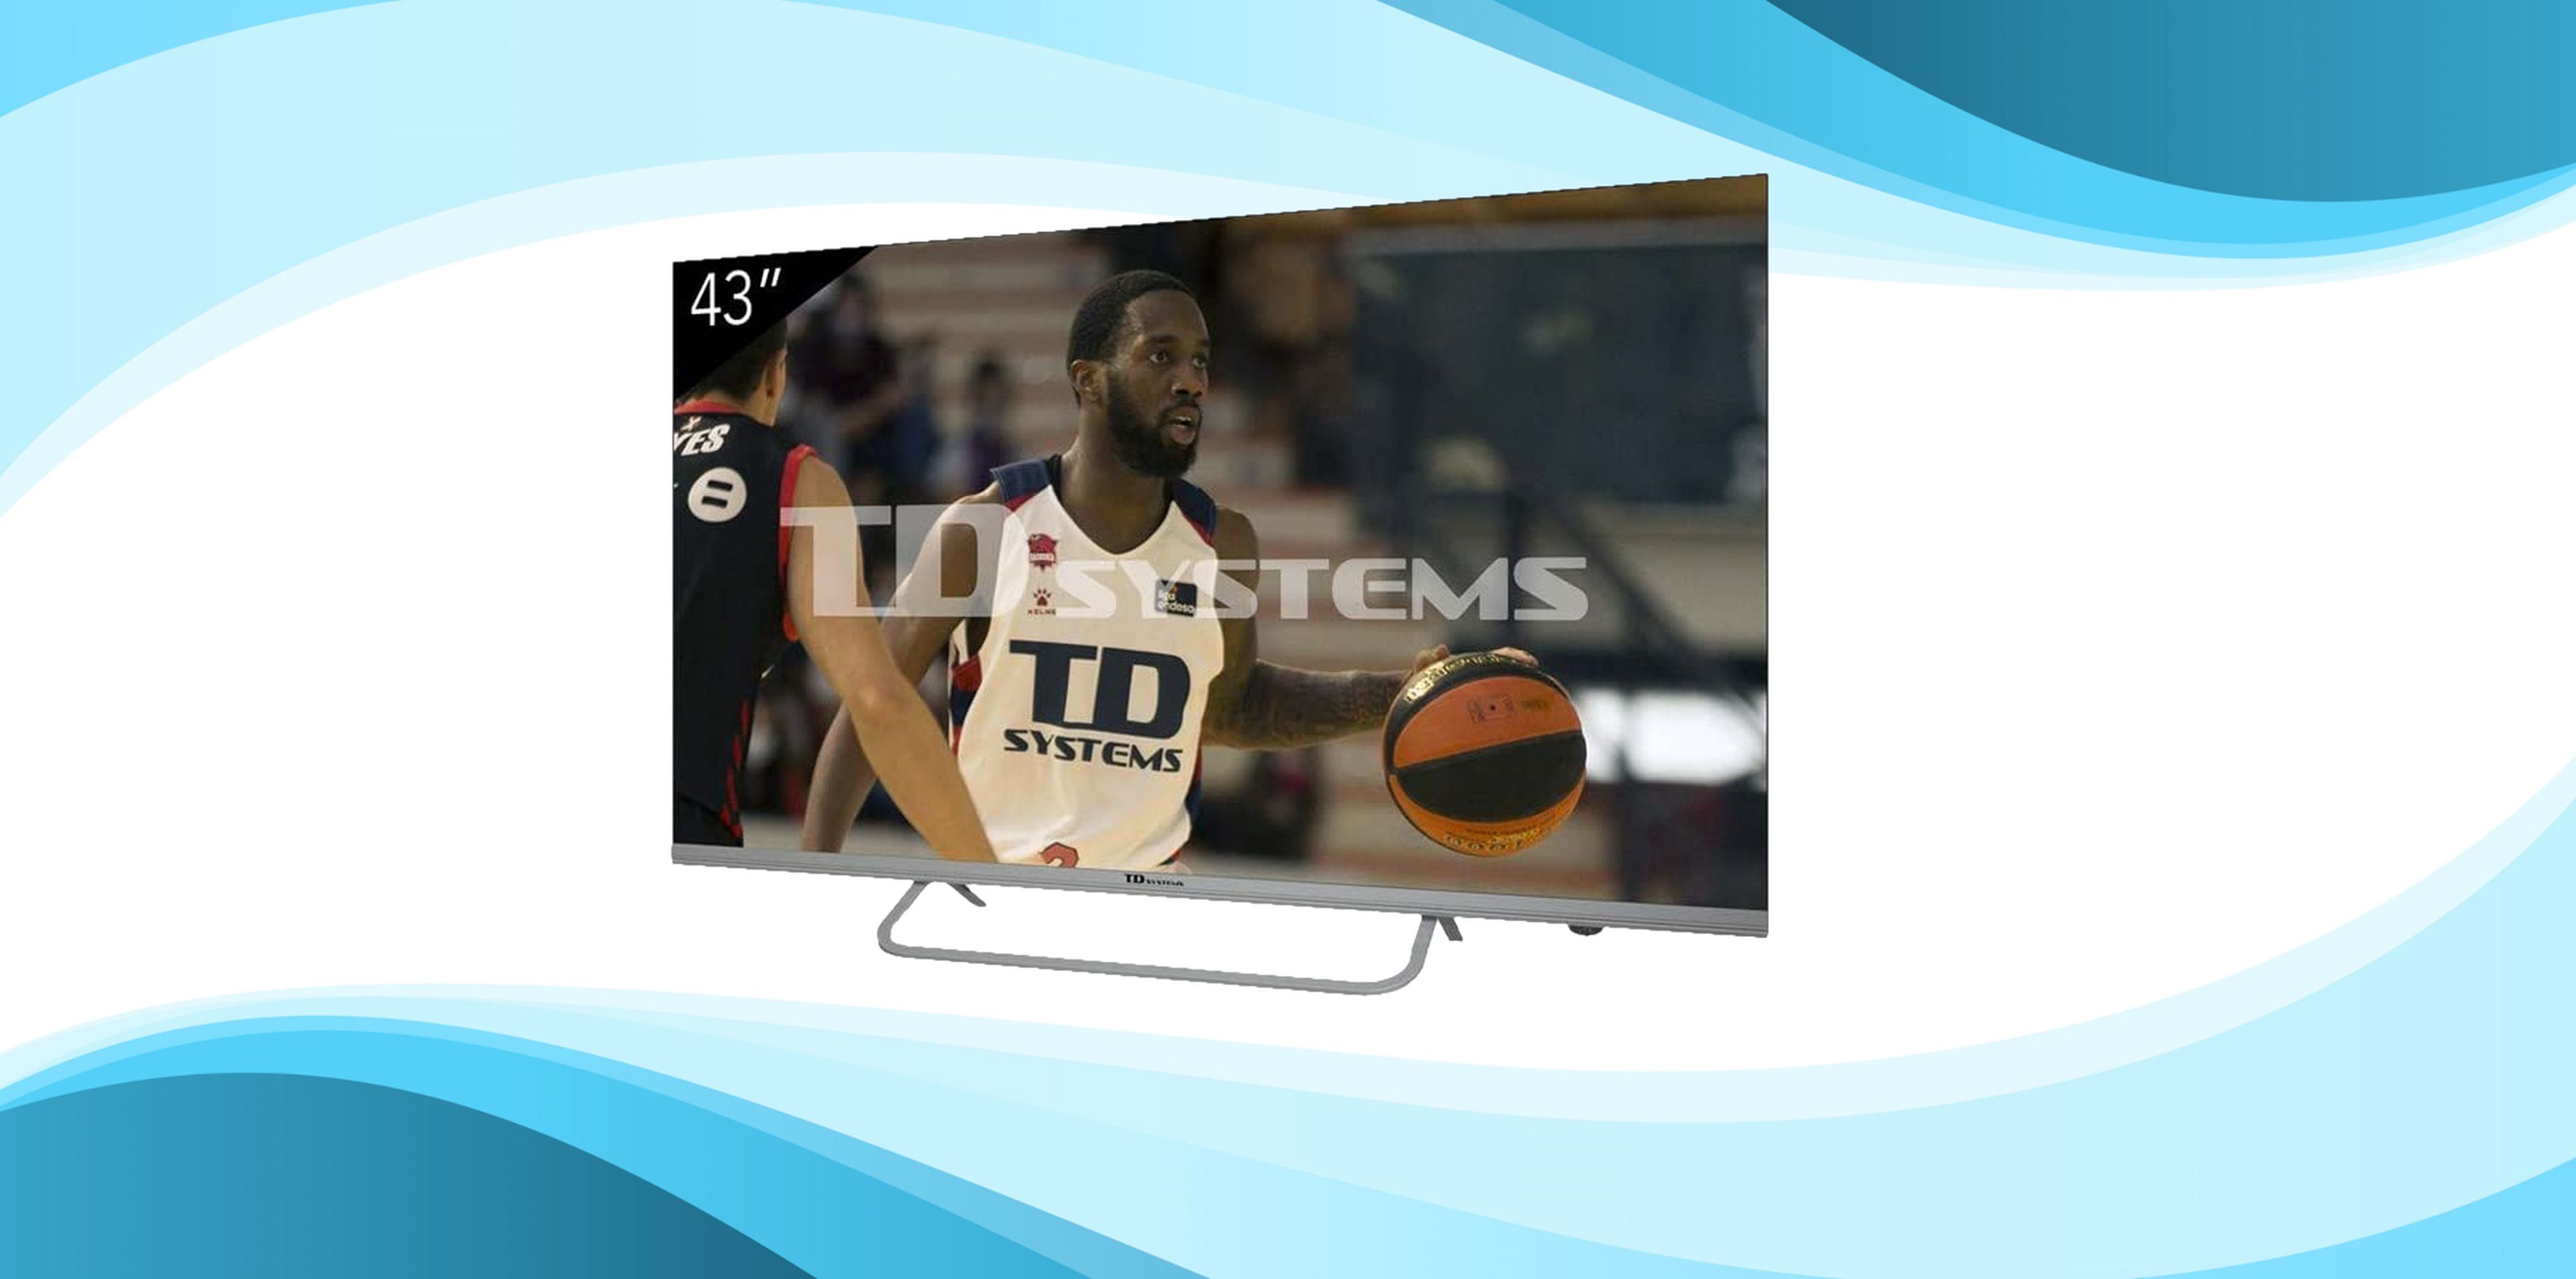 Así es la Smart TV 4k de 58 pulgadas de TD Systems: HDR10, Android